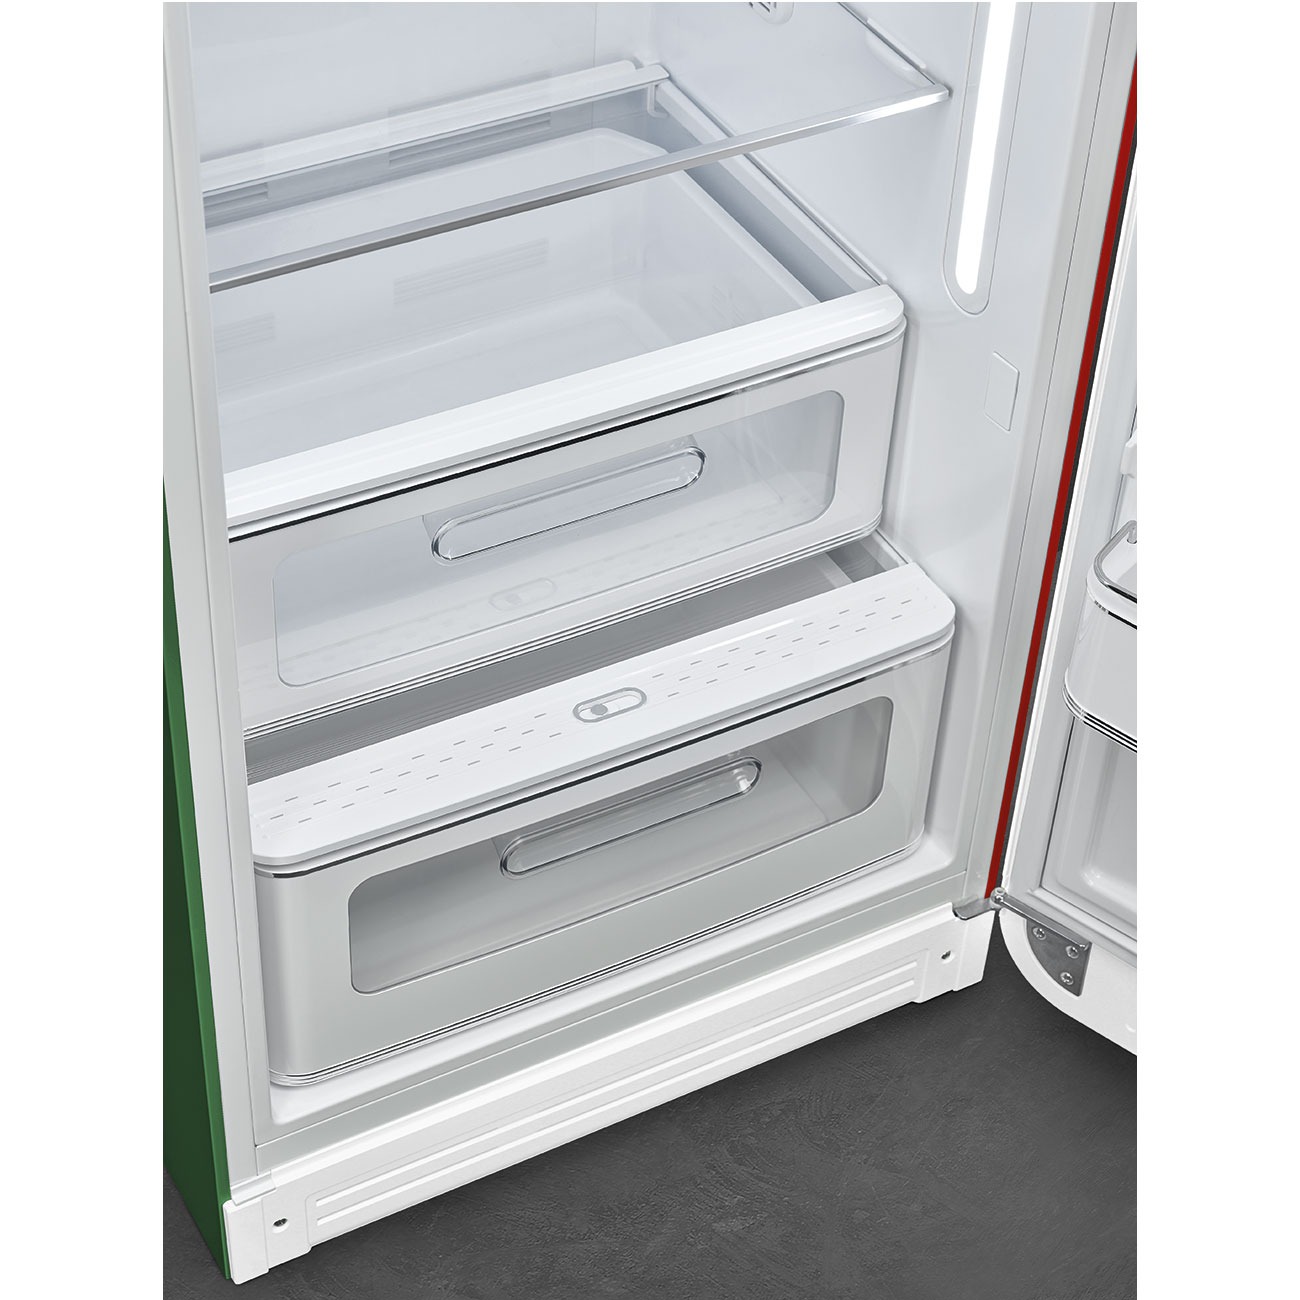 Tủ lạnh một cửa SMEG FAB28RDIT5 màu cờ Italy cánh phải |osm.com.vn | Thiết  bị bếp và gia dụng OSM